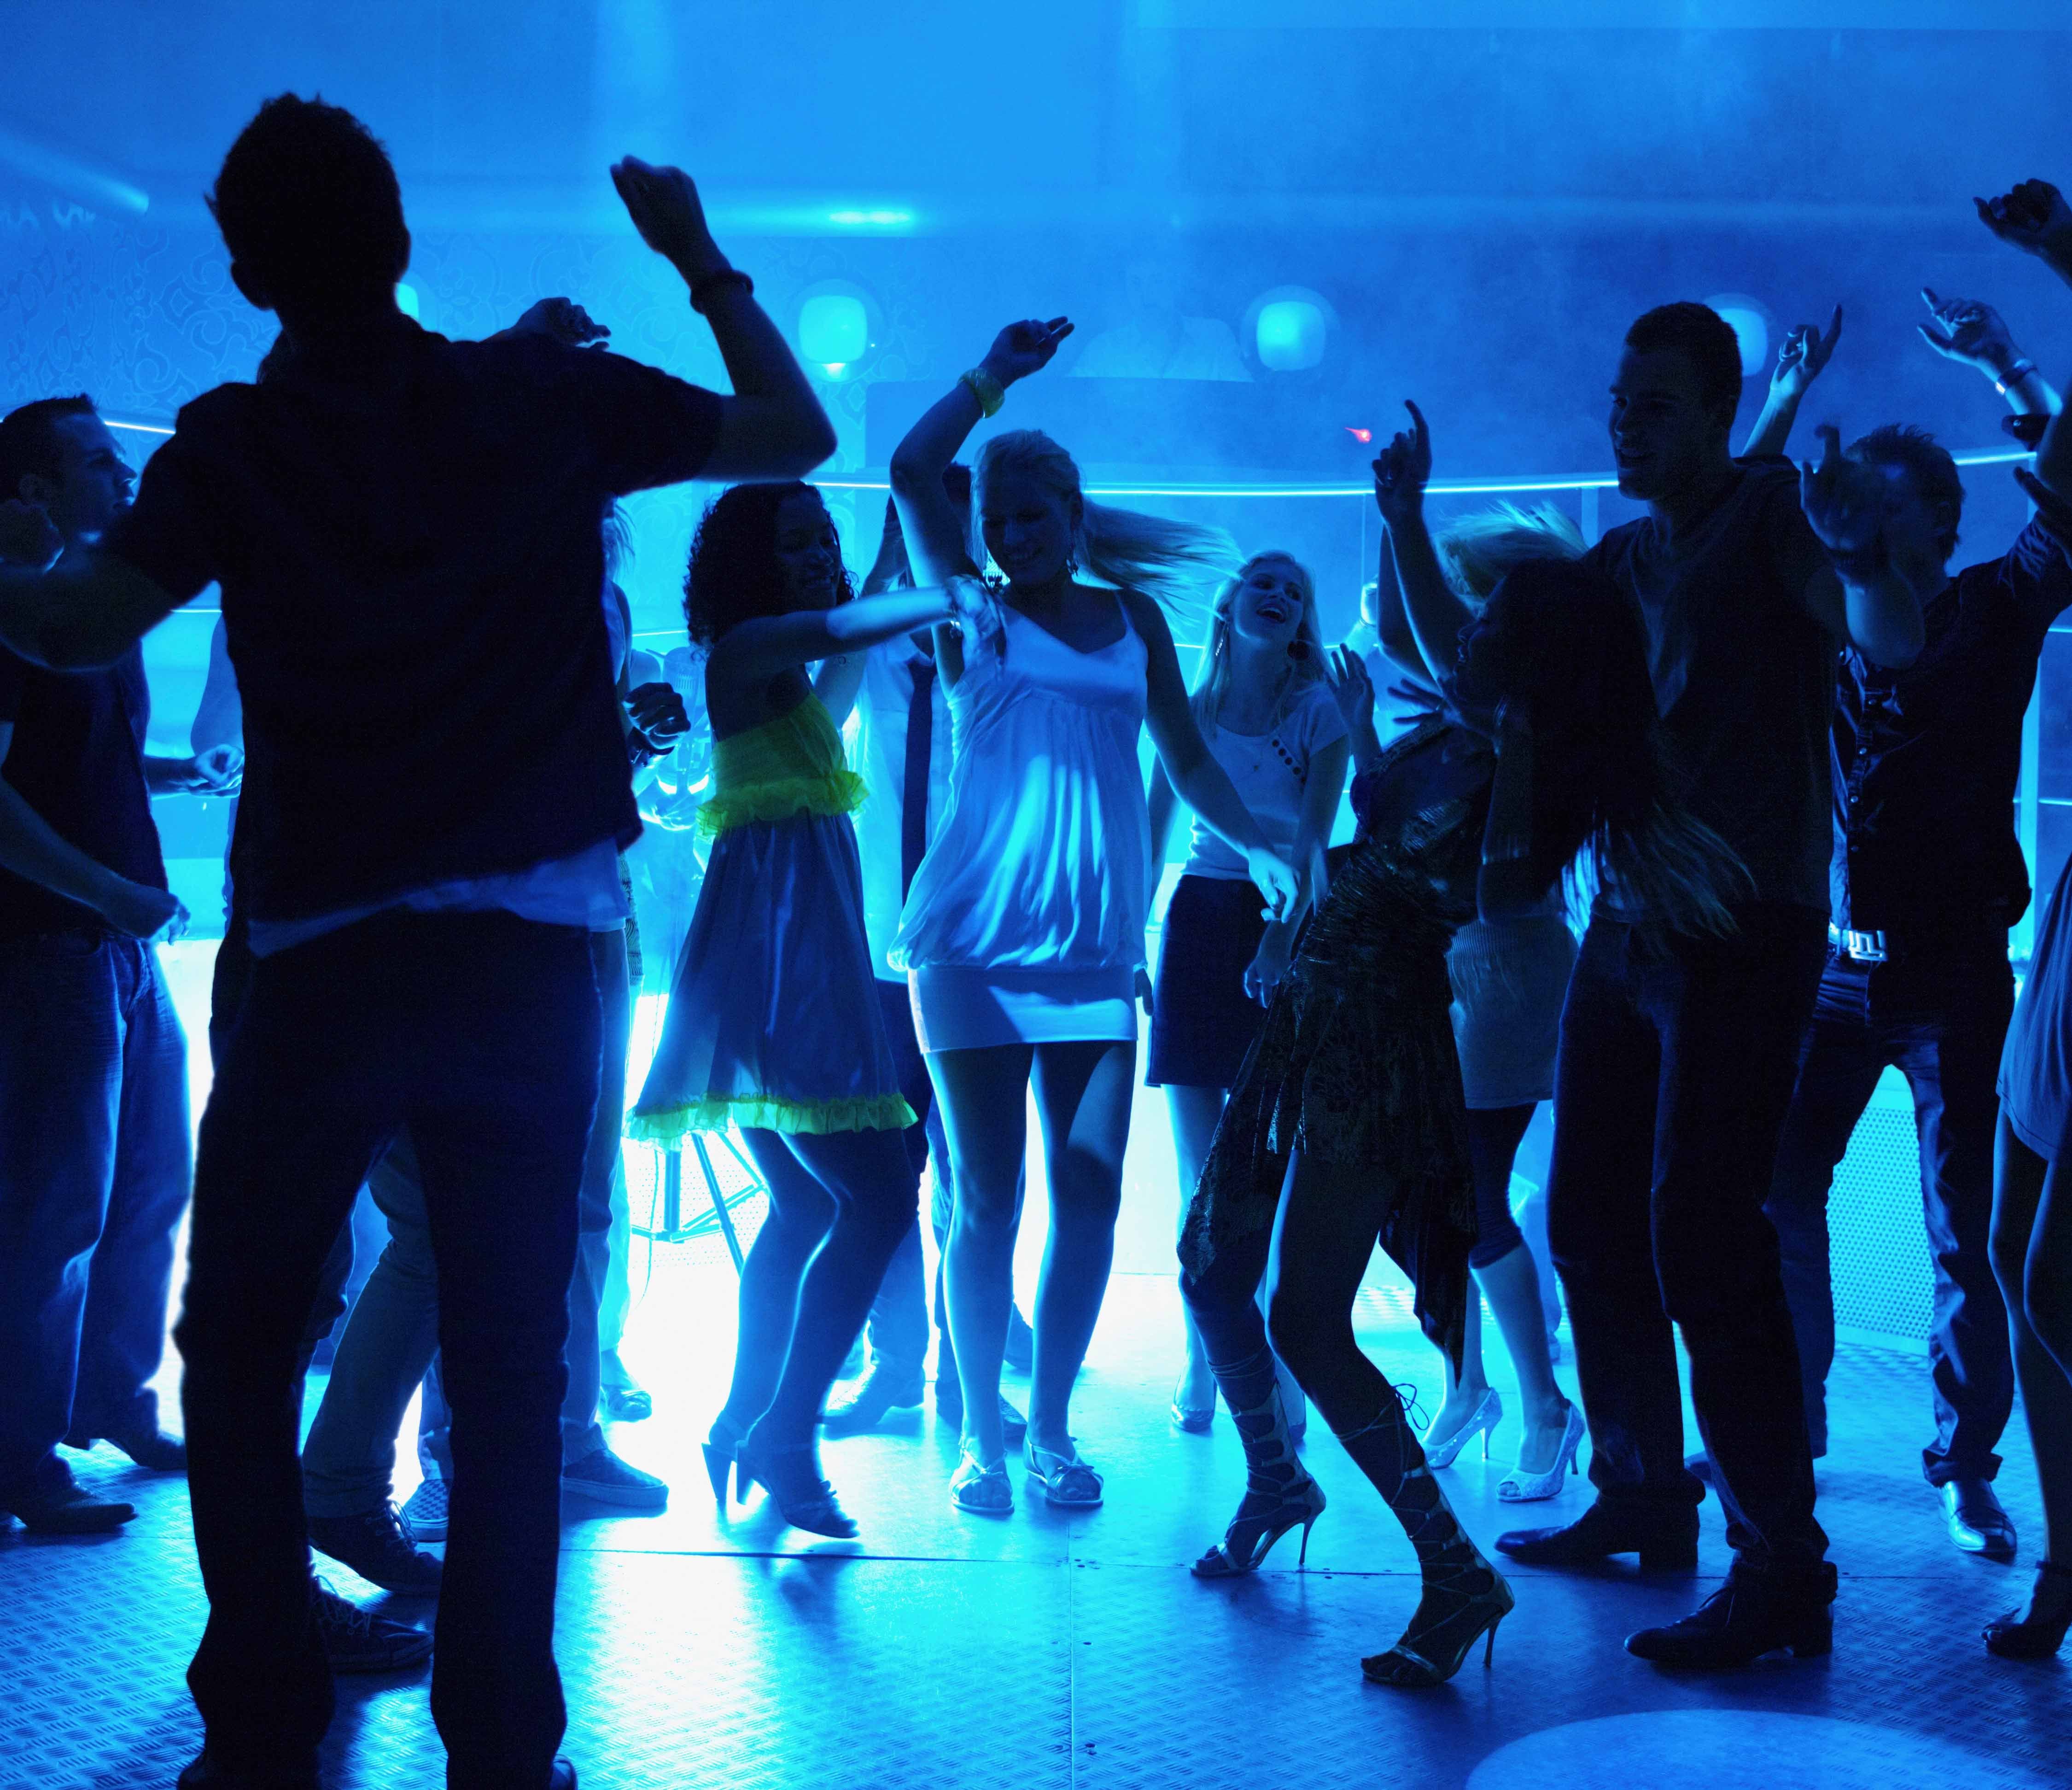 Ночной клуб 17. Ночная дискотека. Клубные танцы. Танцы в клубе. Люди танцуют на дискотеке.